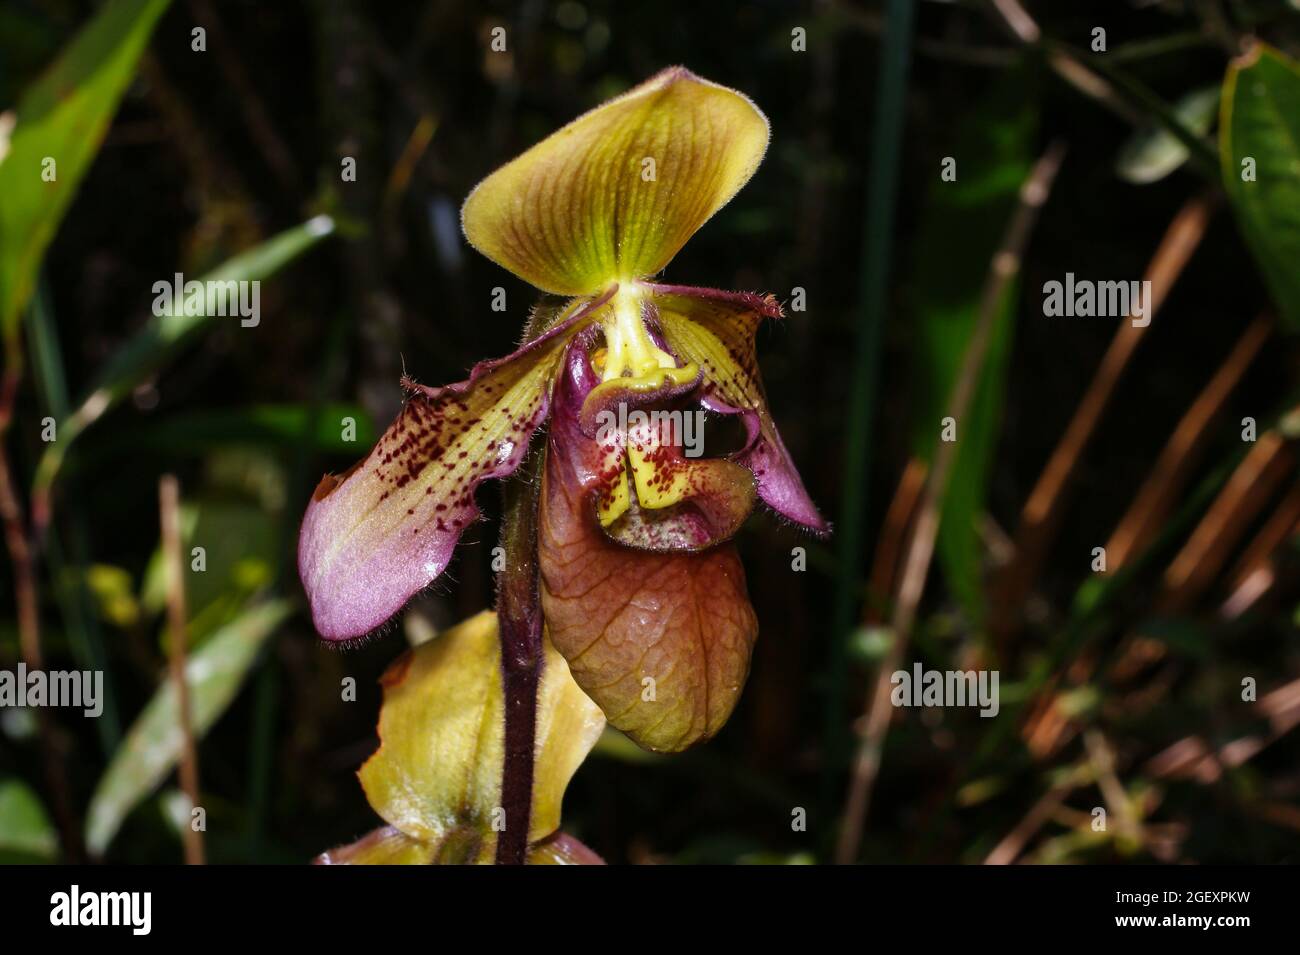 Slipper orchid flower (Paphiopedilum hookerae var. volonteanum), Sabah, Borneo Stock Photo